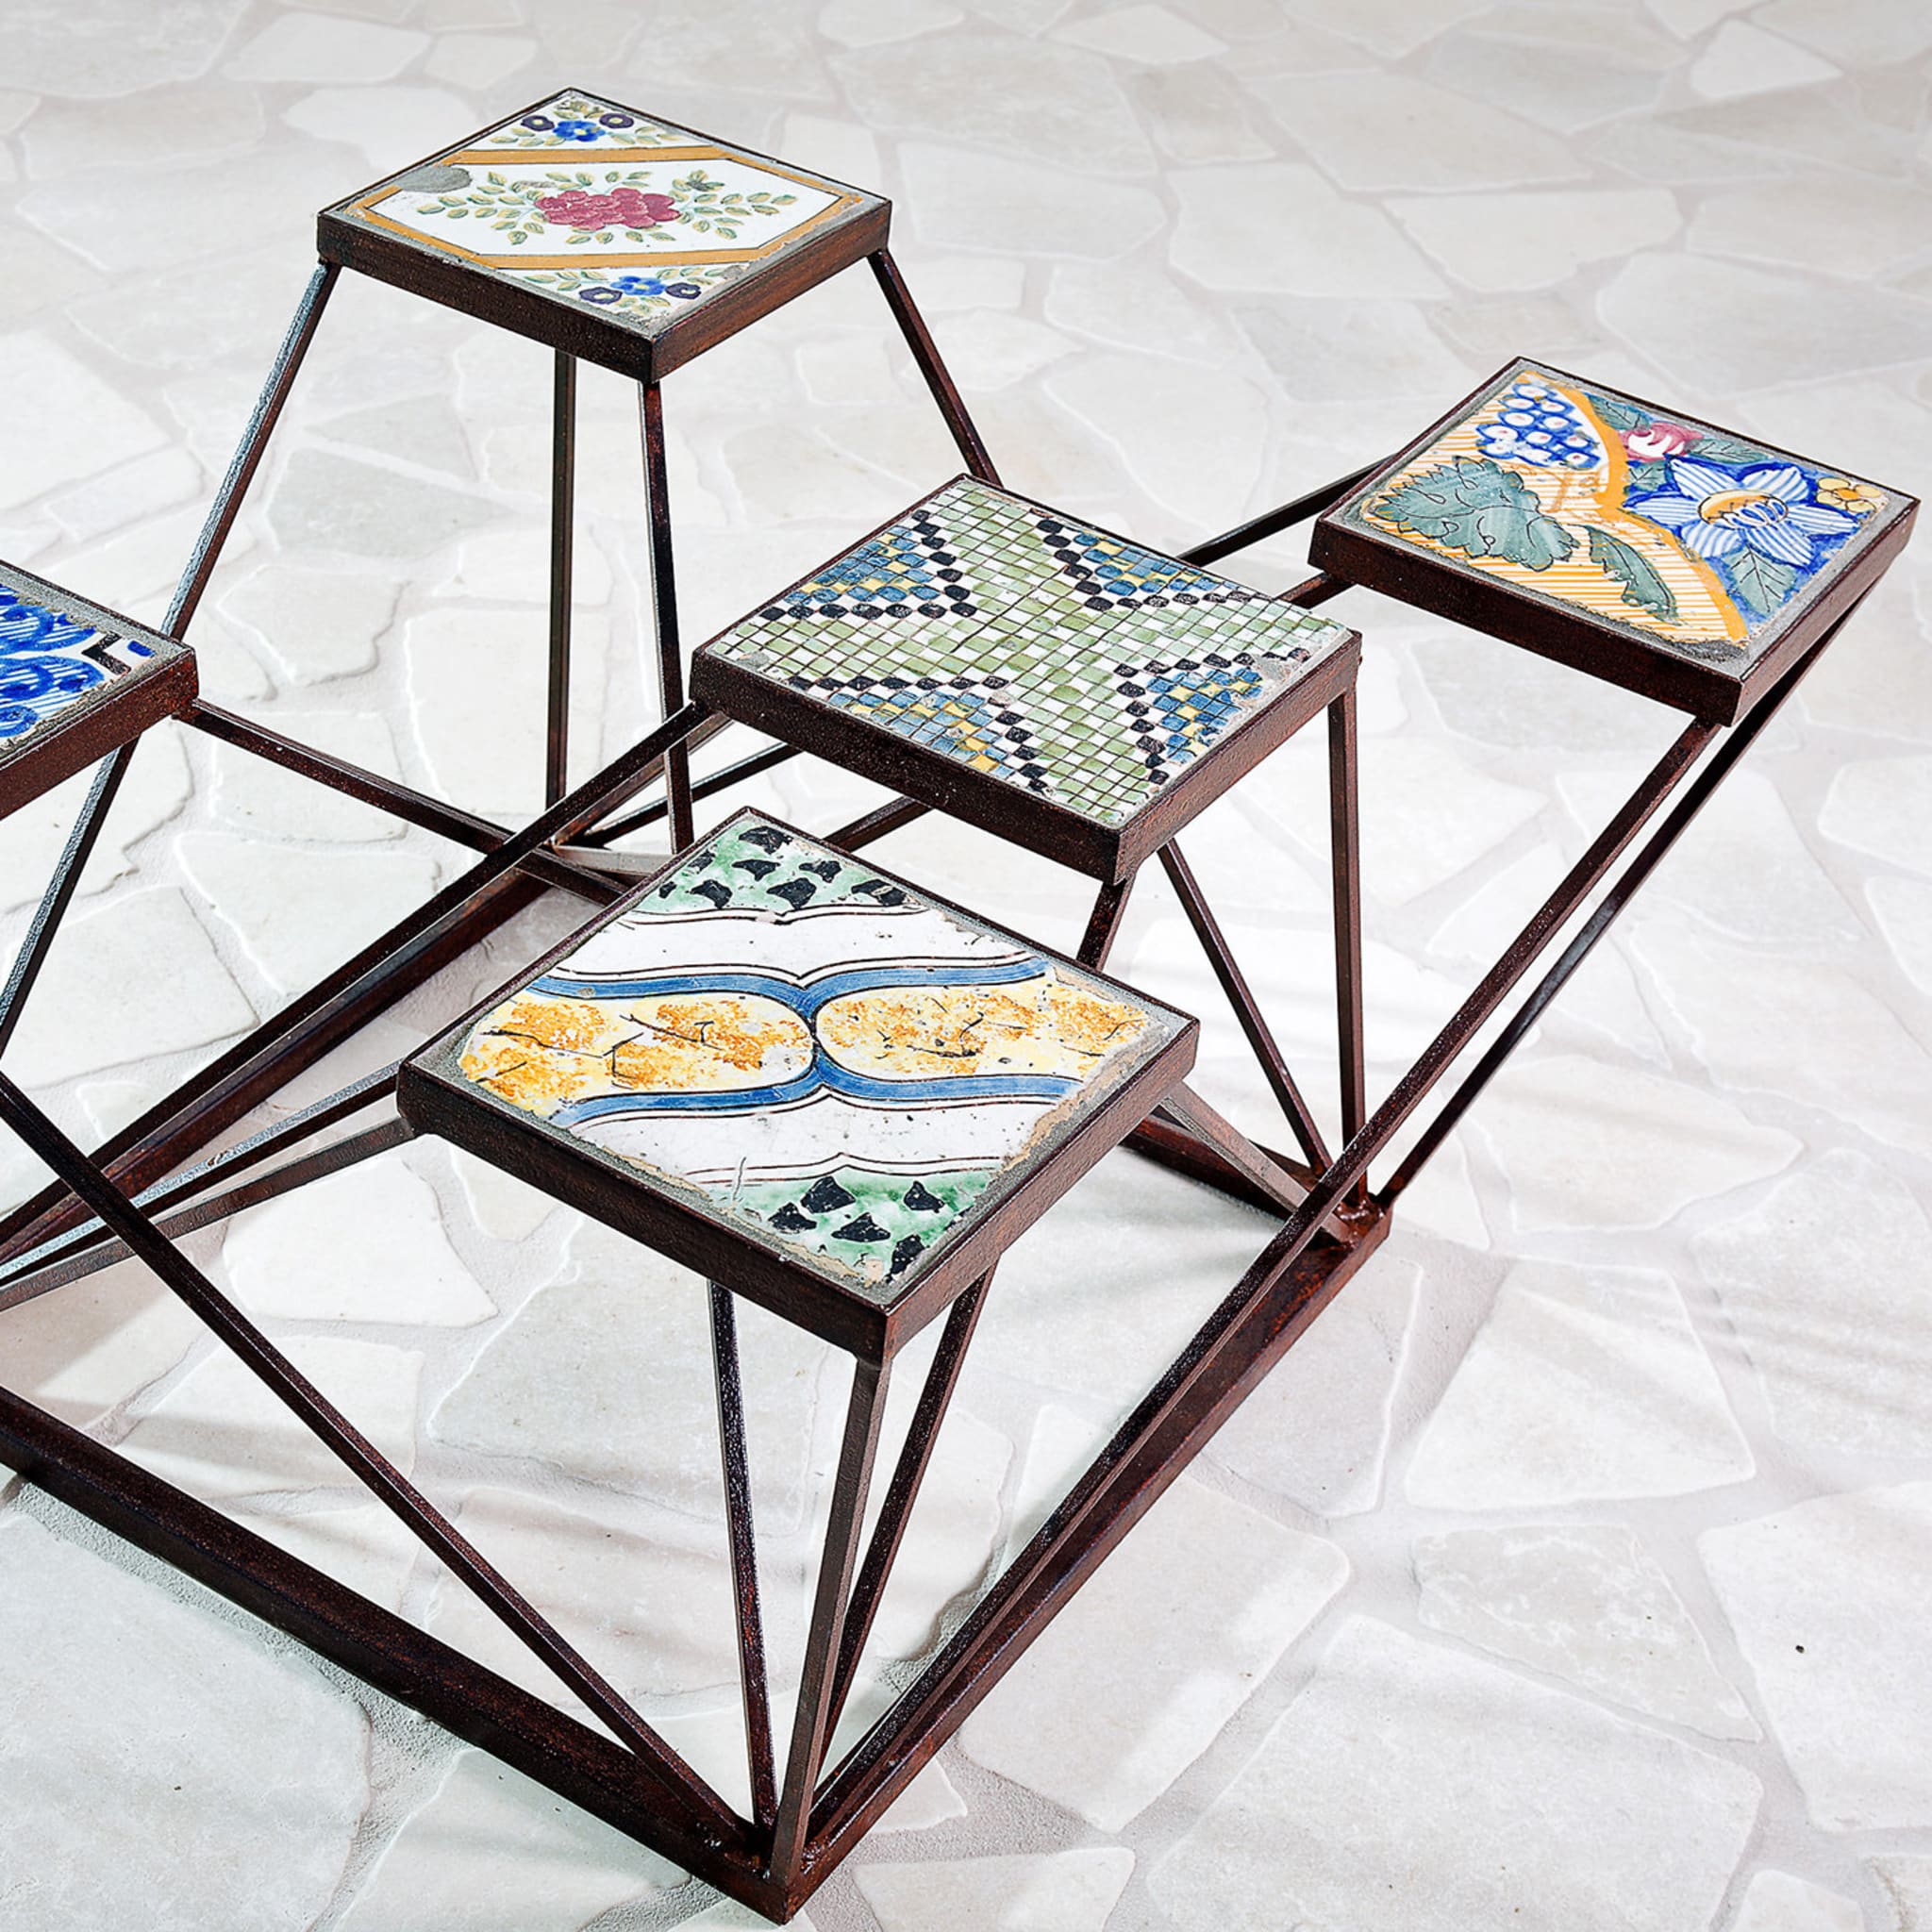 Quintet Ensemble Pedestal Table - Alternative view 2